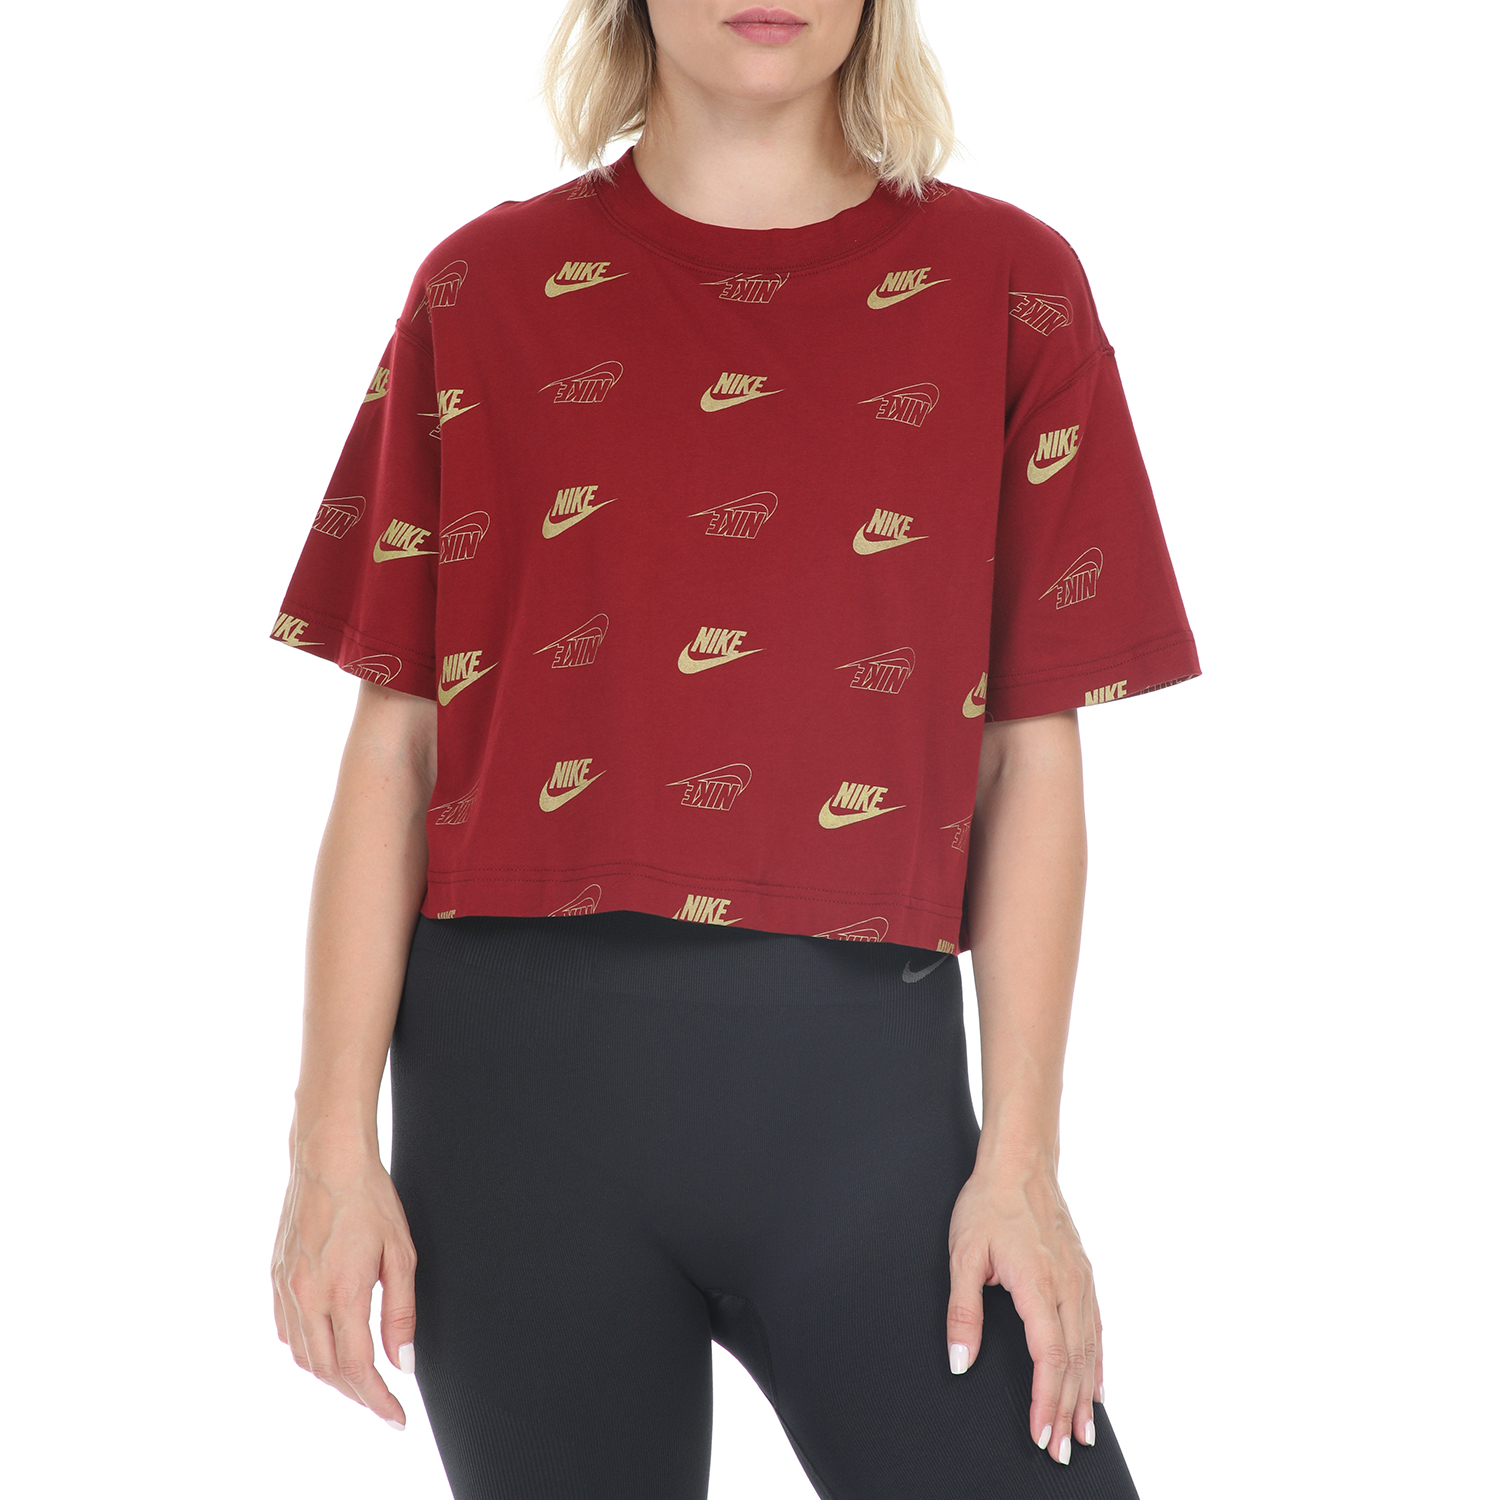 Γυναικεία/Ρούχα/Αθλητικά/T-shirt-Τοπ NIKE - Γυναικεία κοντομάνικη μπλούζα NIKE TOP CROP SHINE κόκκινο